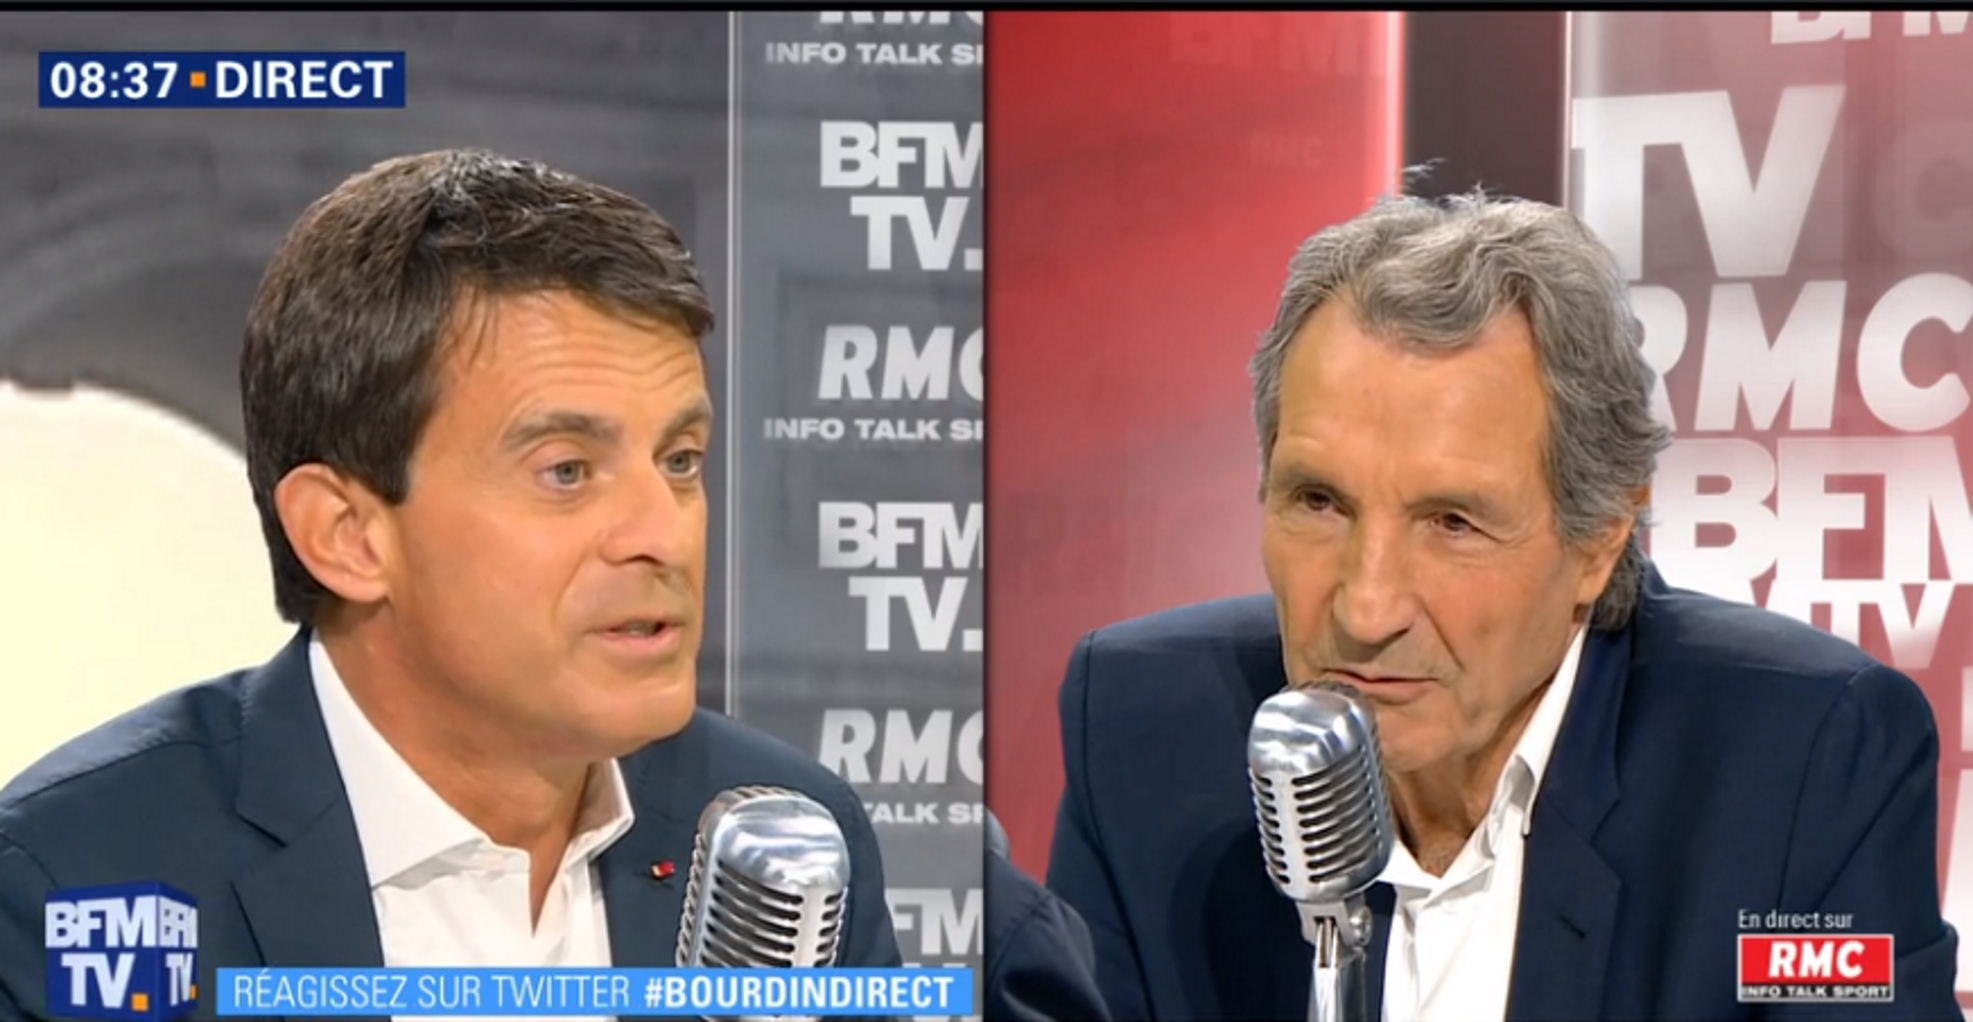 Valls diu a una TV que si no aconsegueix l'alcaldia es retirarà de la política